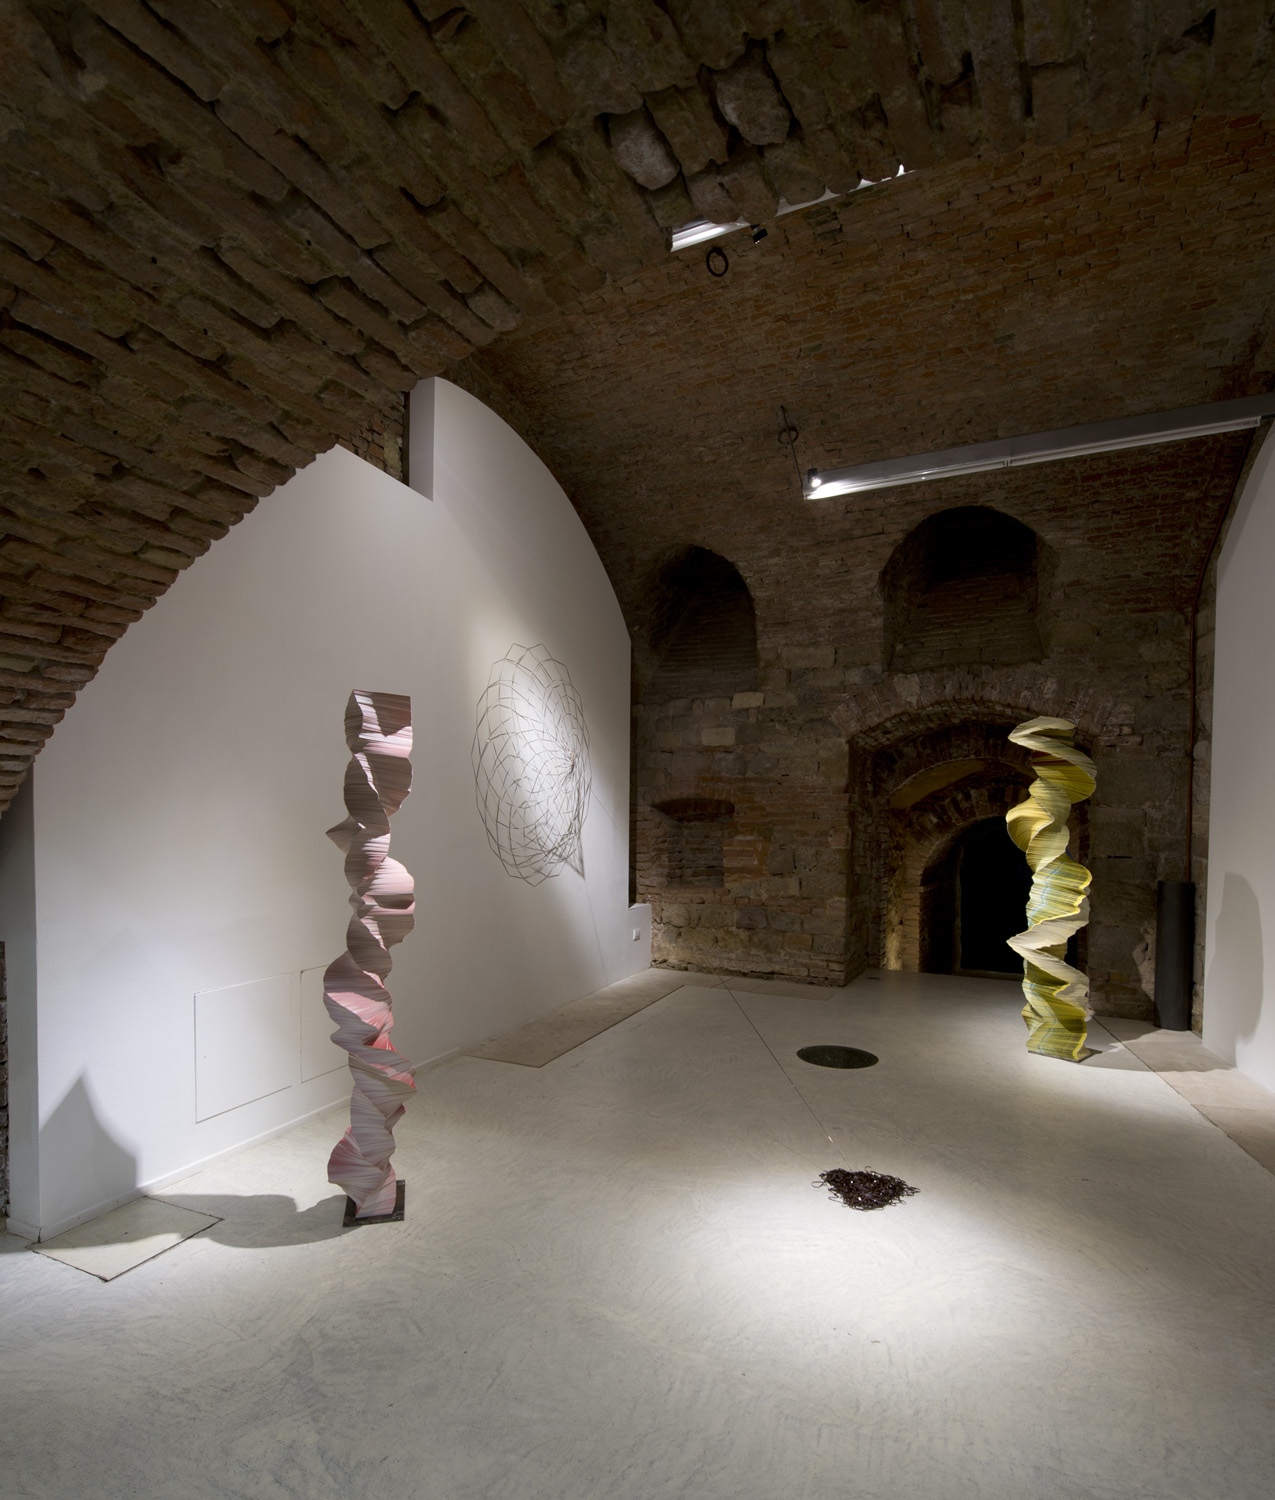 Forme Instabili, Spaziosiena. Domenico Laterza, Installation view. Crediti fotografici Andrea Lensini